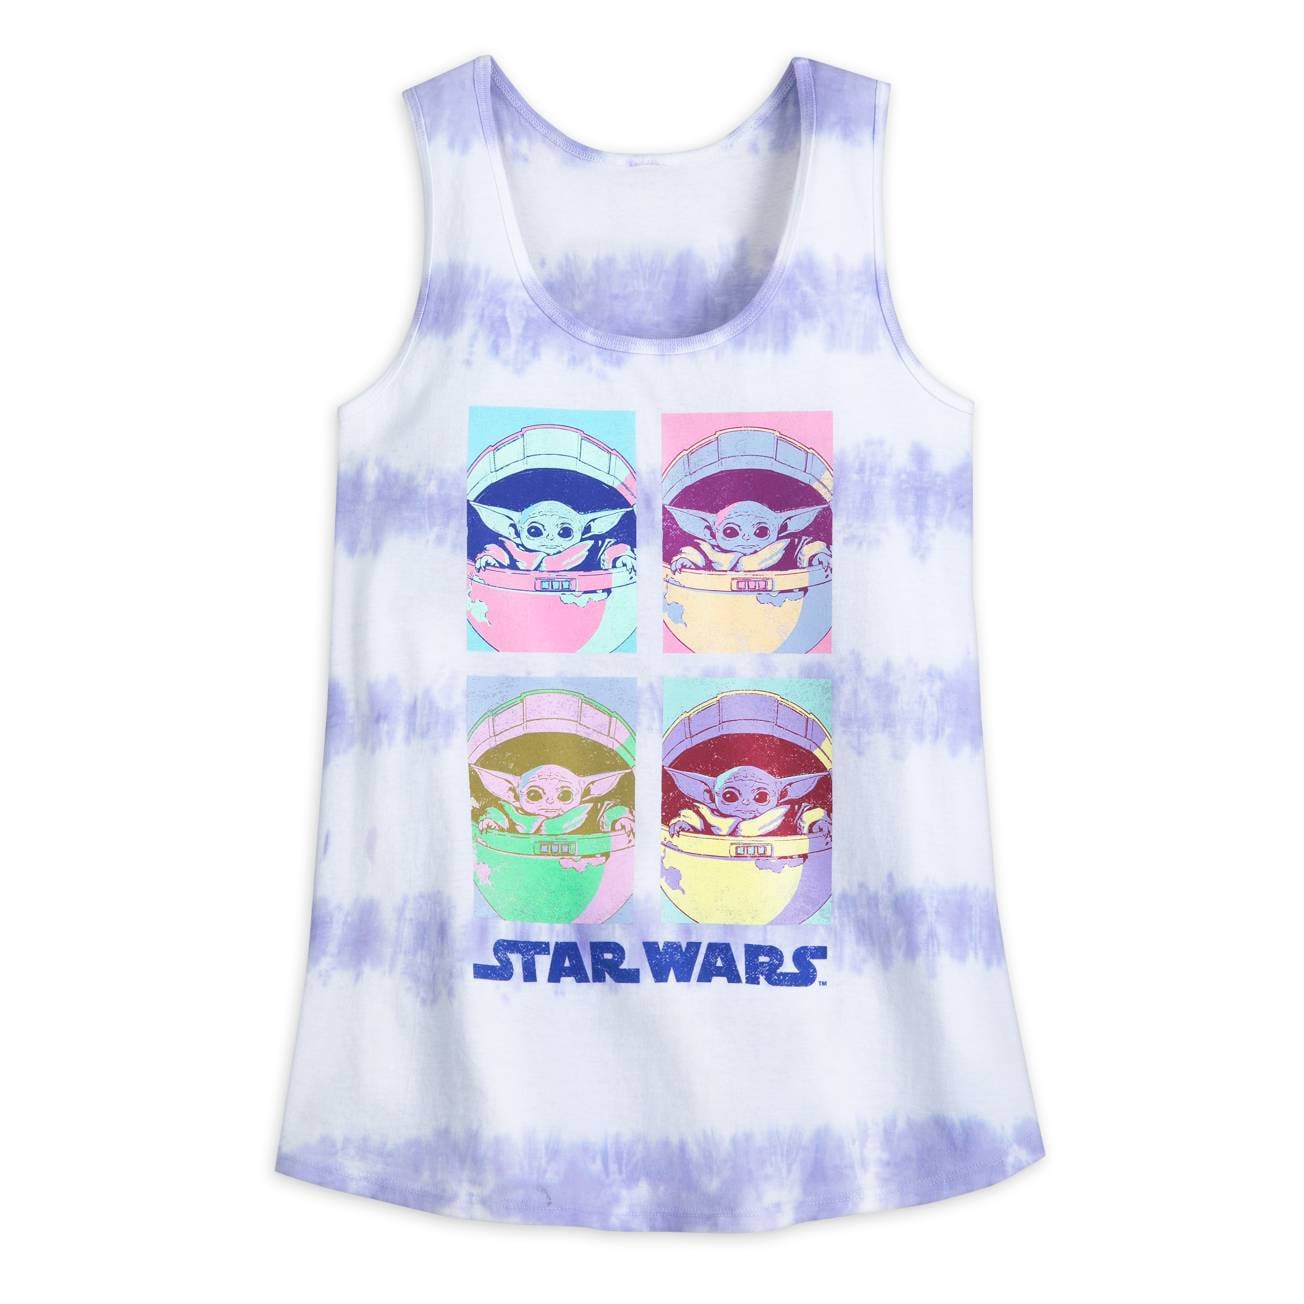 For Baby Yoda Fans: Grogu Tie-Dye Tank Top